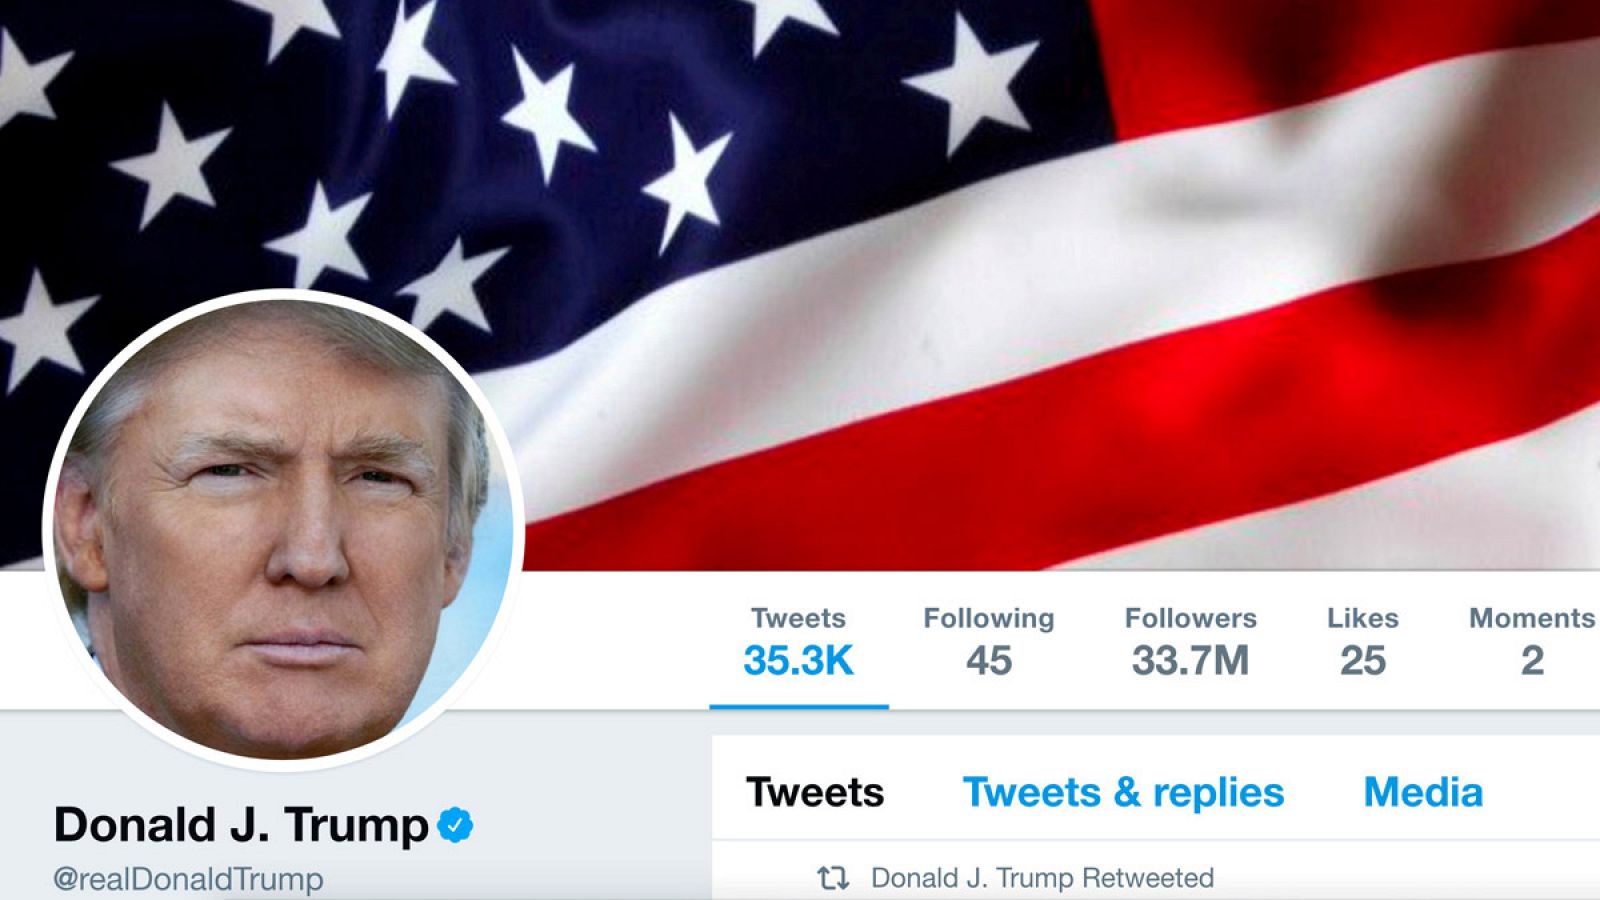 La cuenta @realDonaldTrump tiene 41,7 millones de seguidores